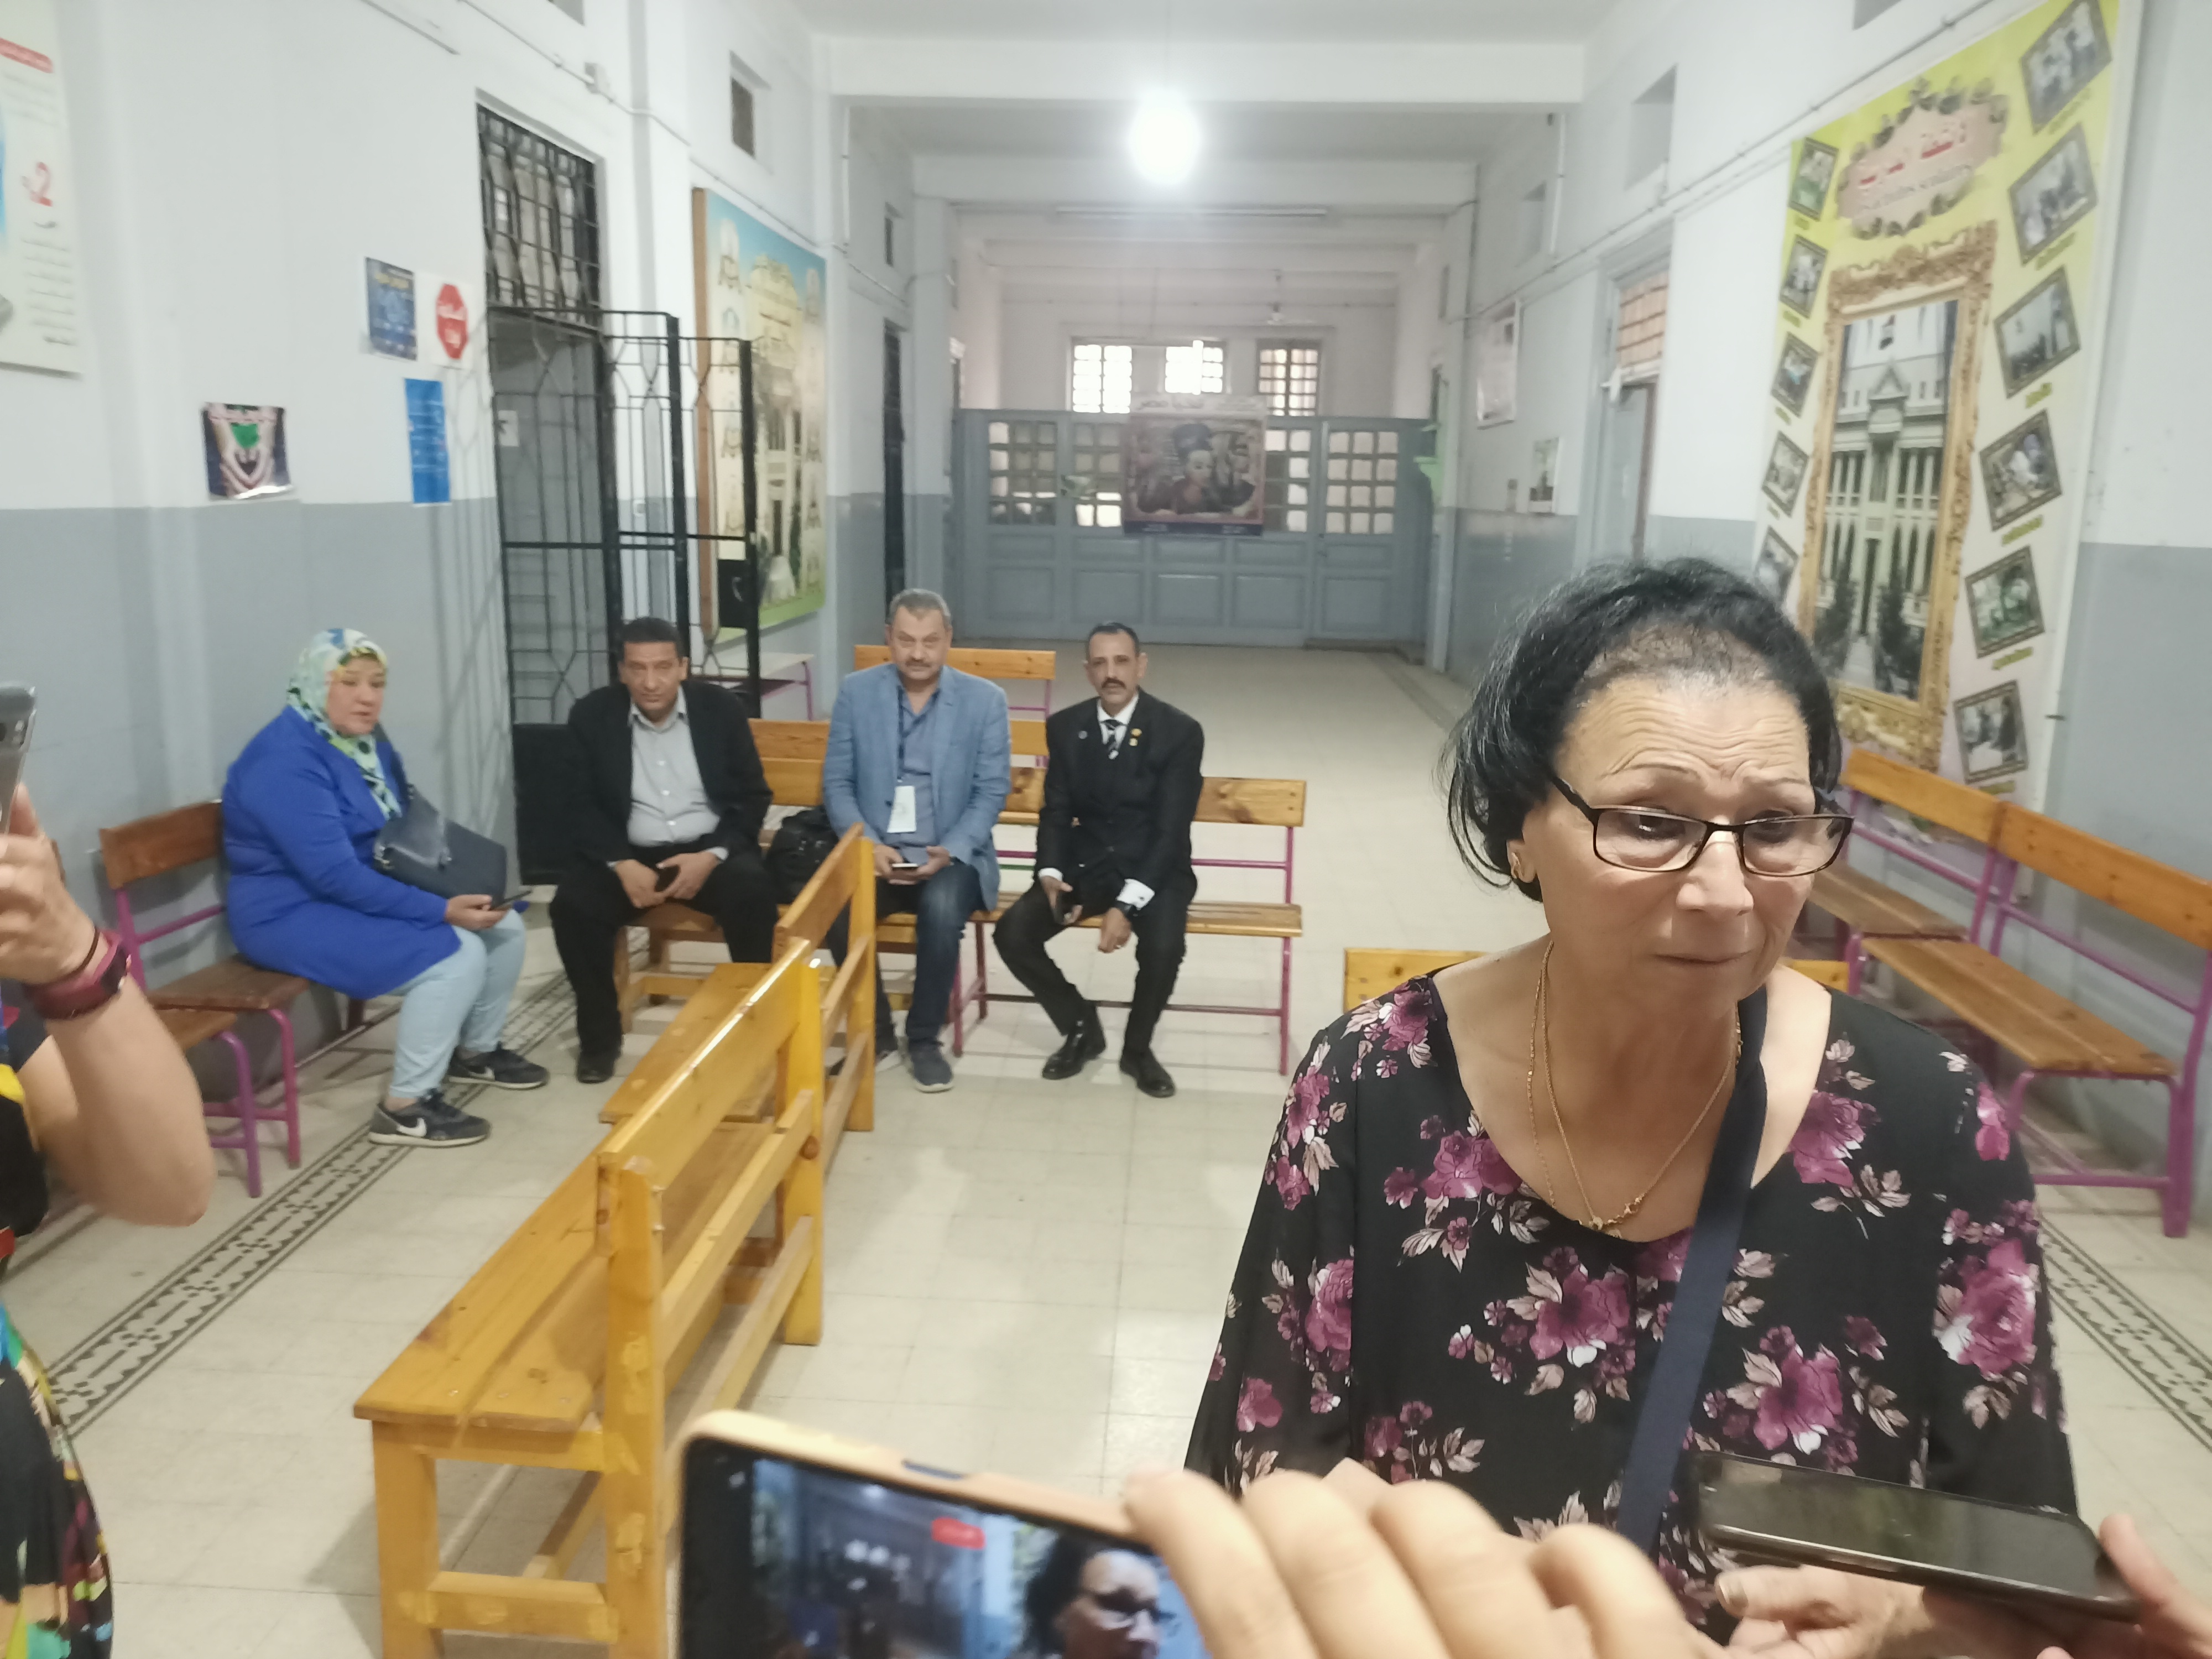 بعد خمسون عاما سيدة منوفية تصطحب نجلتها لزيارة مدرسة القديمة وتشيد بالعملية الانتخابية و (3)